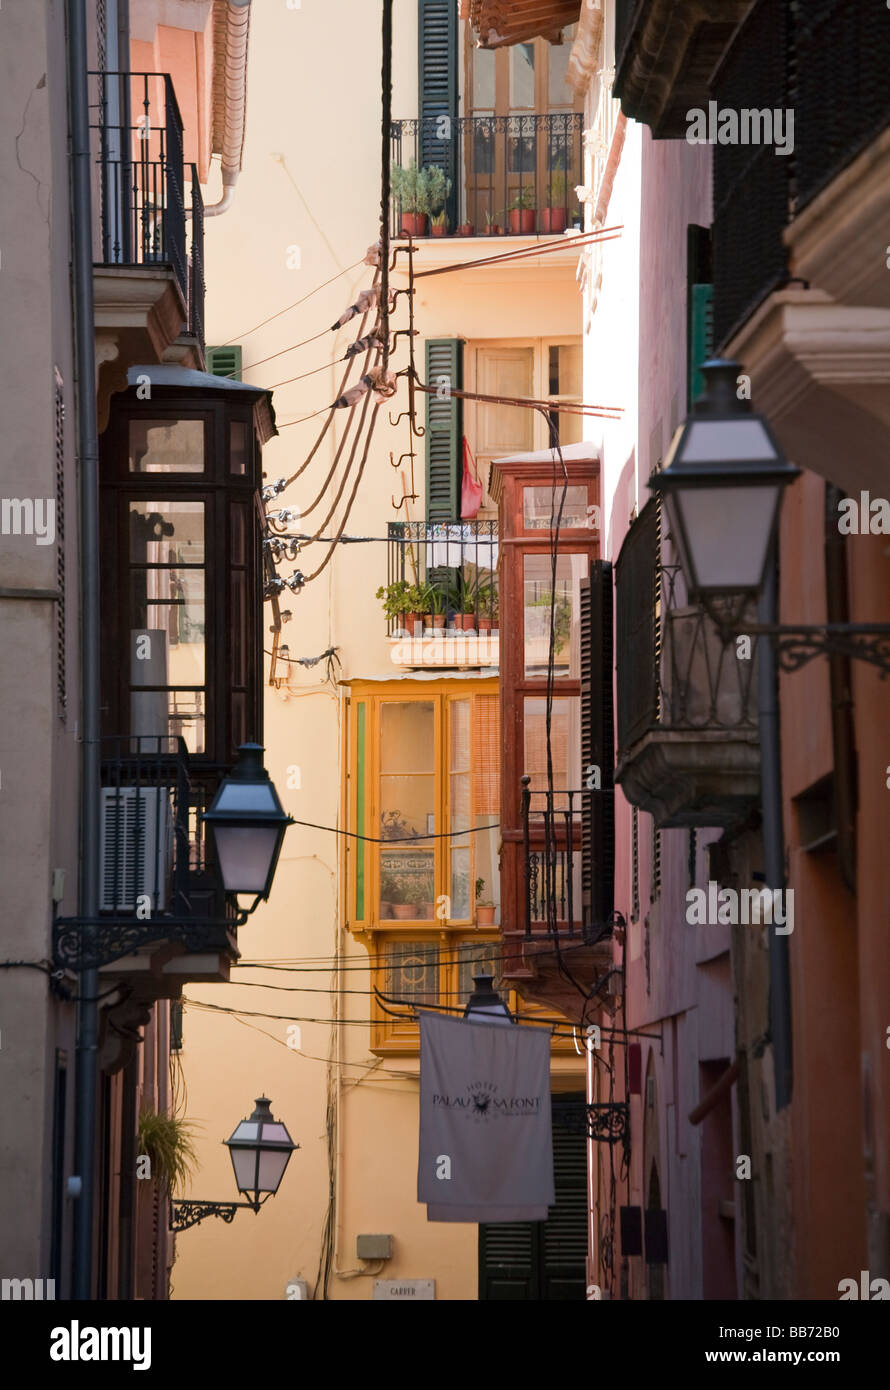 Narrow street with balconies Palma Mallorca Spain Stock Photo